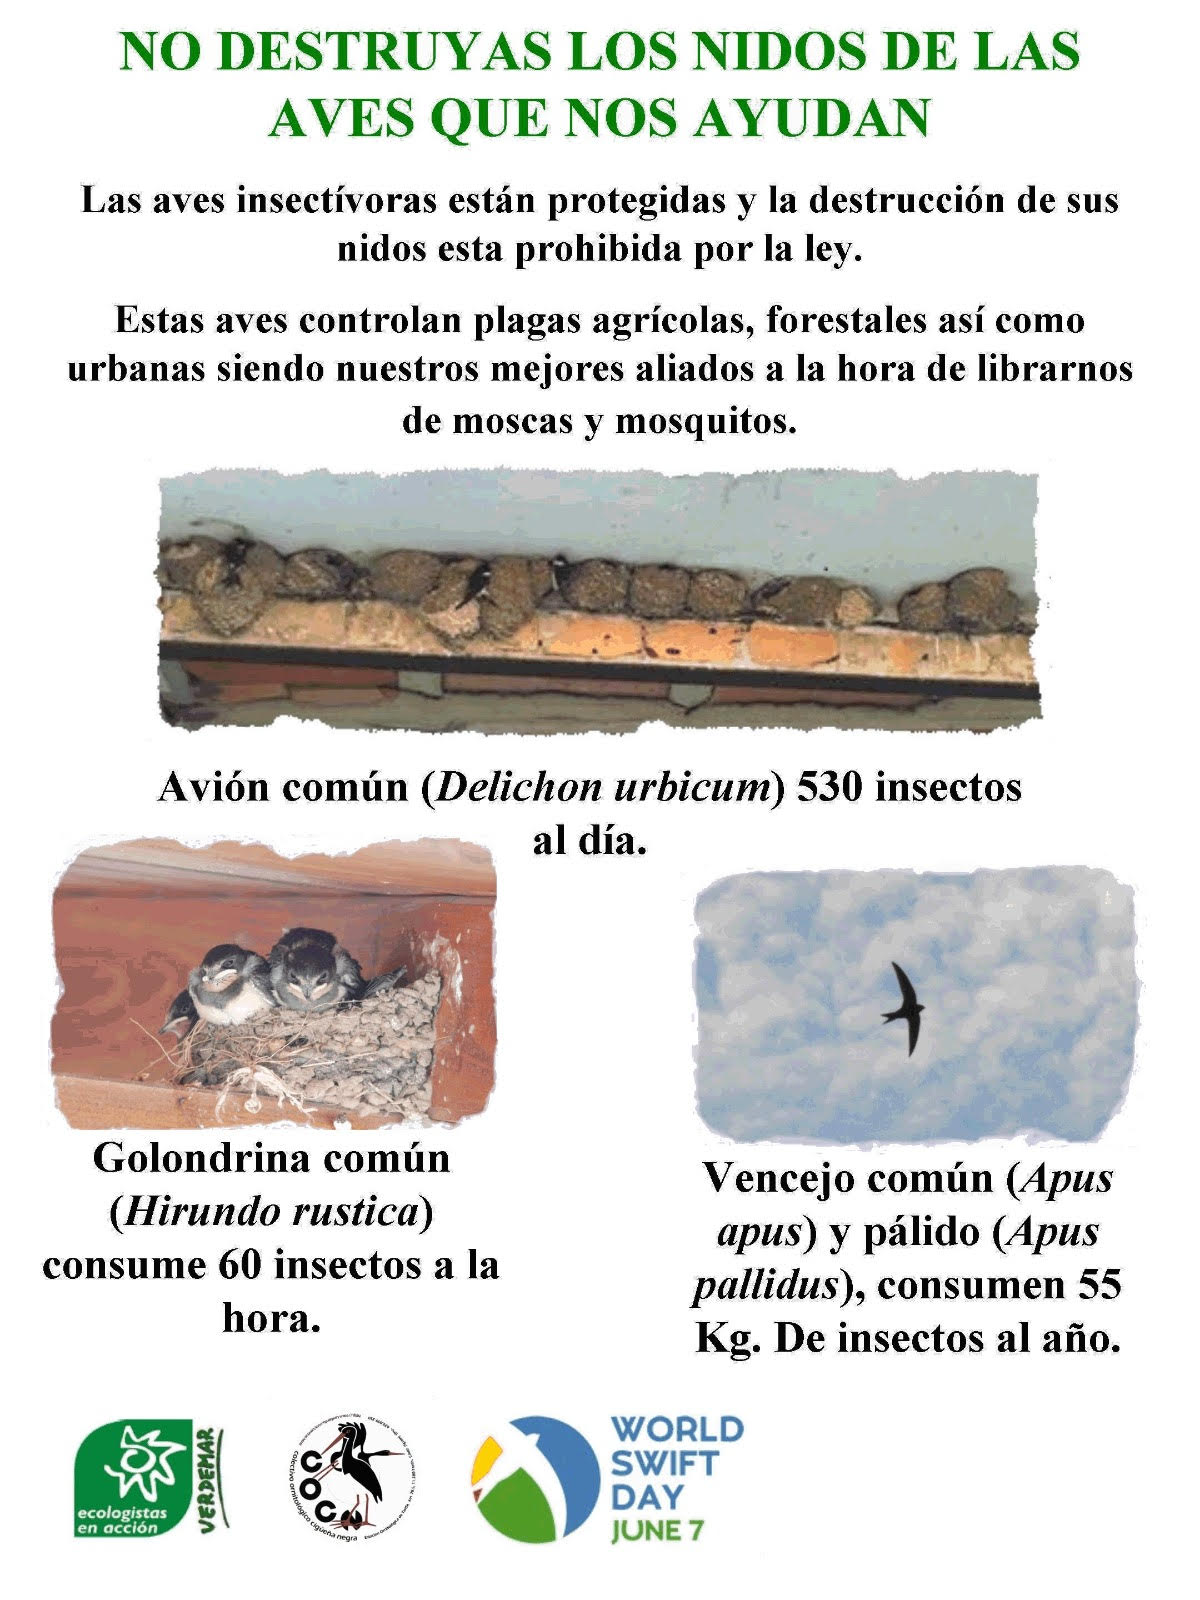 Cartel de la campaña de Verdemar-Ecologistas en Acción (EEA) y el Colectivo Ornitológico Cigüeña Negra (COCN) para proteger los nidos de aves insectívoras en la ciudad